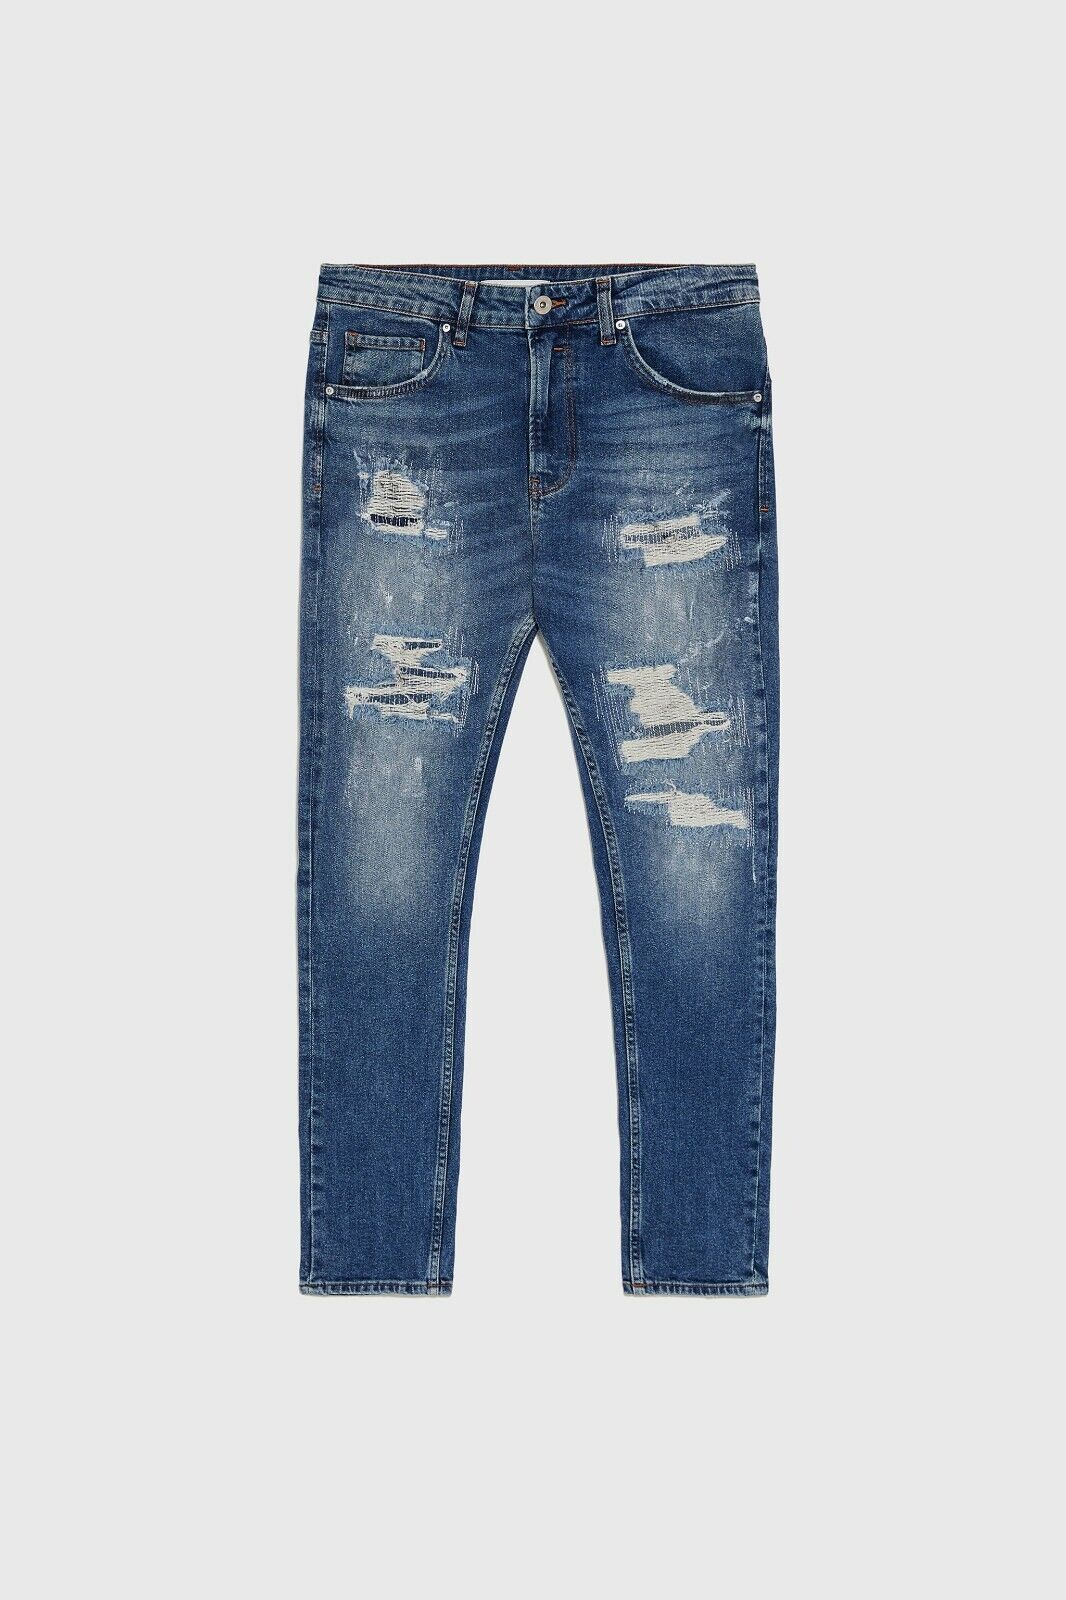 New Men&#039;s Paint Splattered Ripped Skinny Jeans US30 Blue denim | eBay